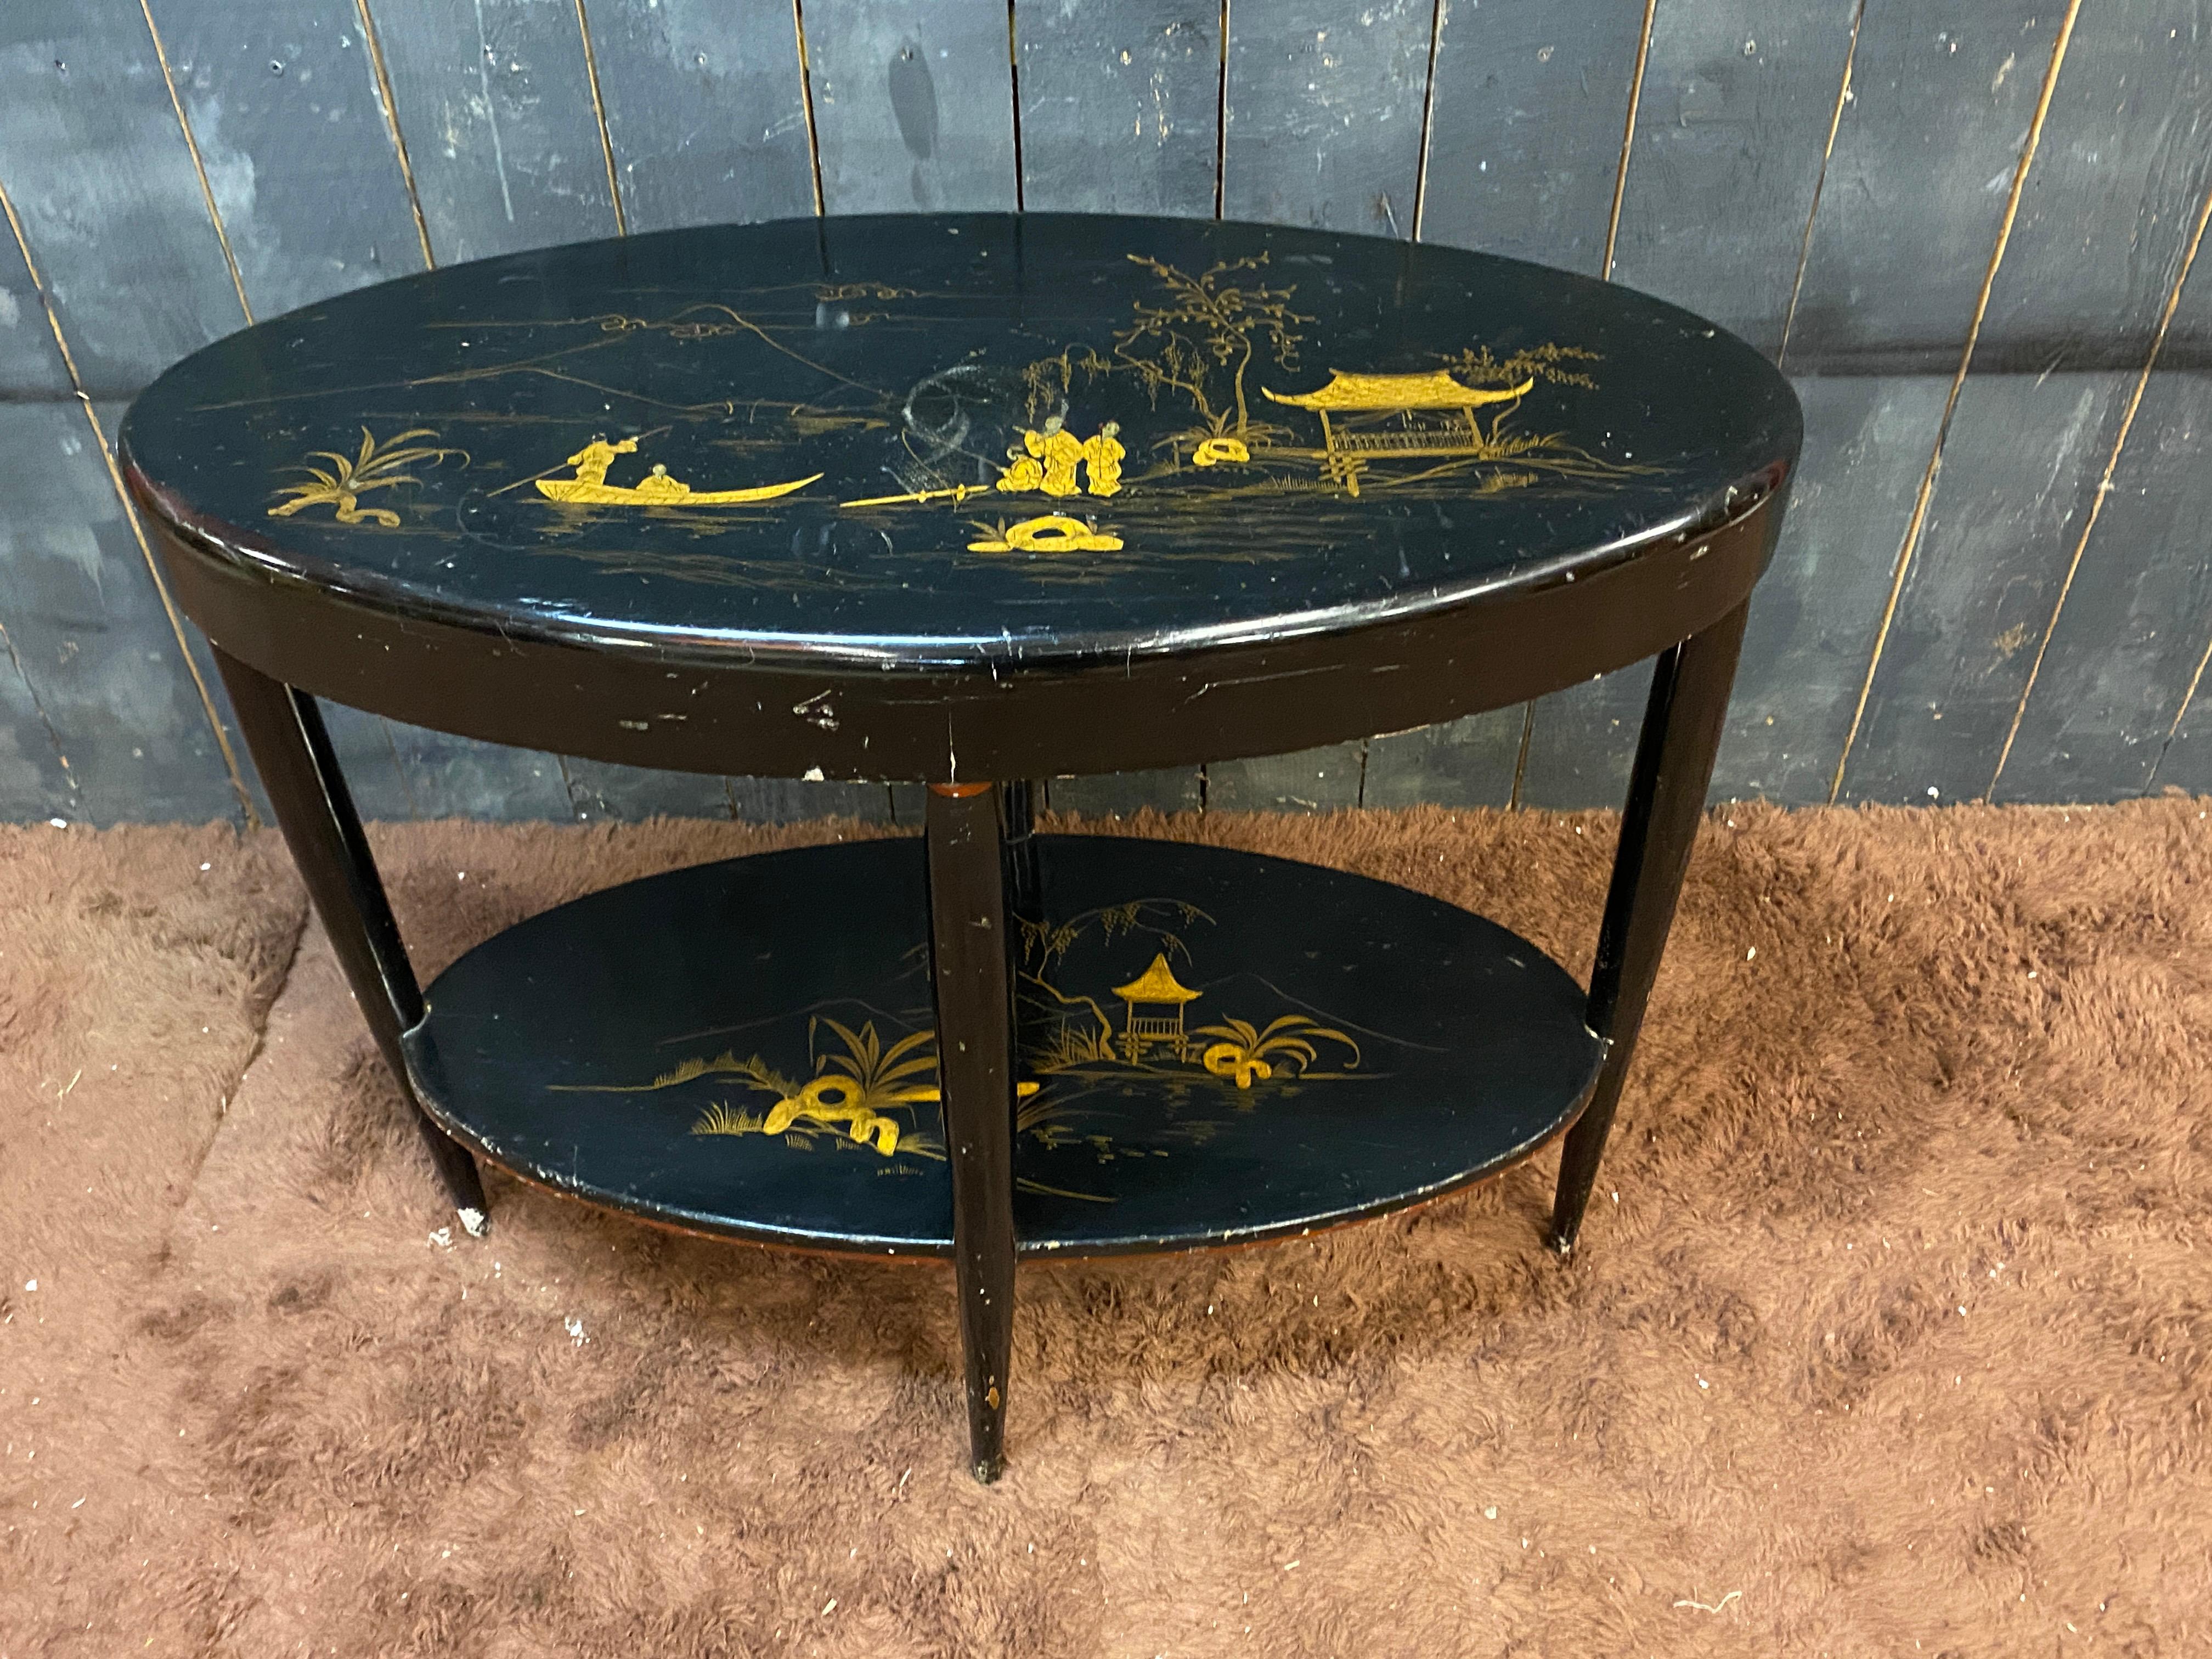 Konsolentisch oder hoher Sockeltisch aus schwarz und goldfarben lackiertem Holz, mit chinesischem Dekor, um 1930
Fehlende Farbe und Flecken auf der Oberseite